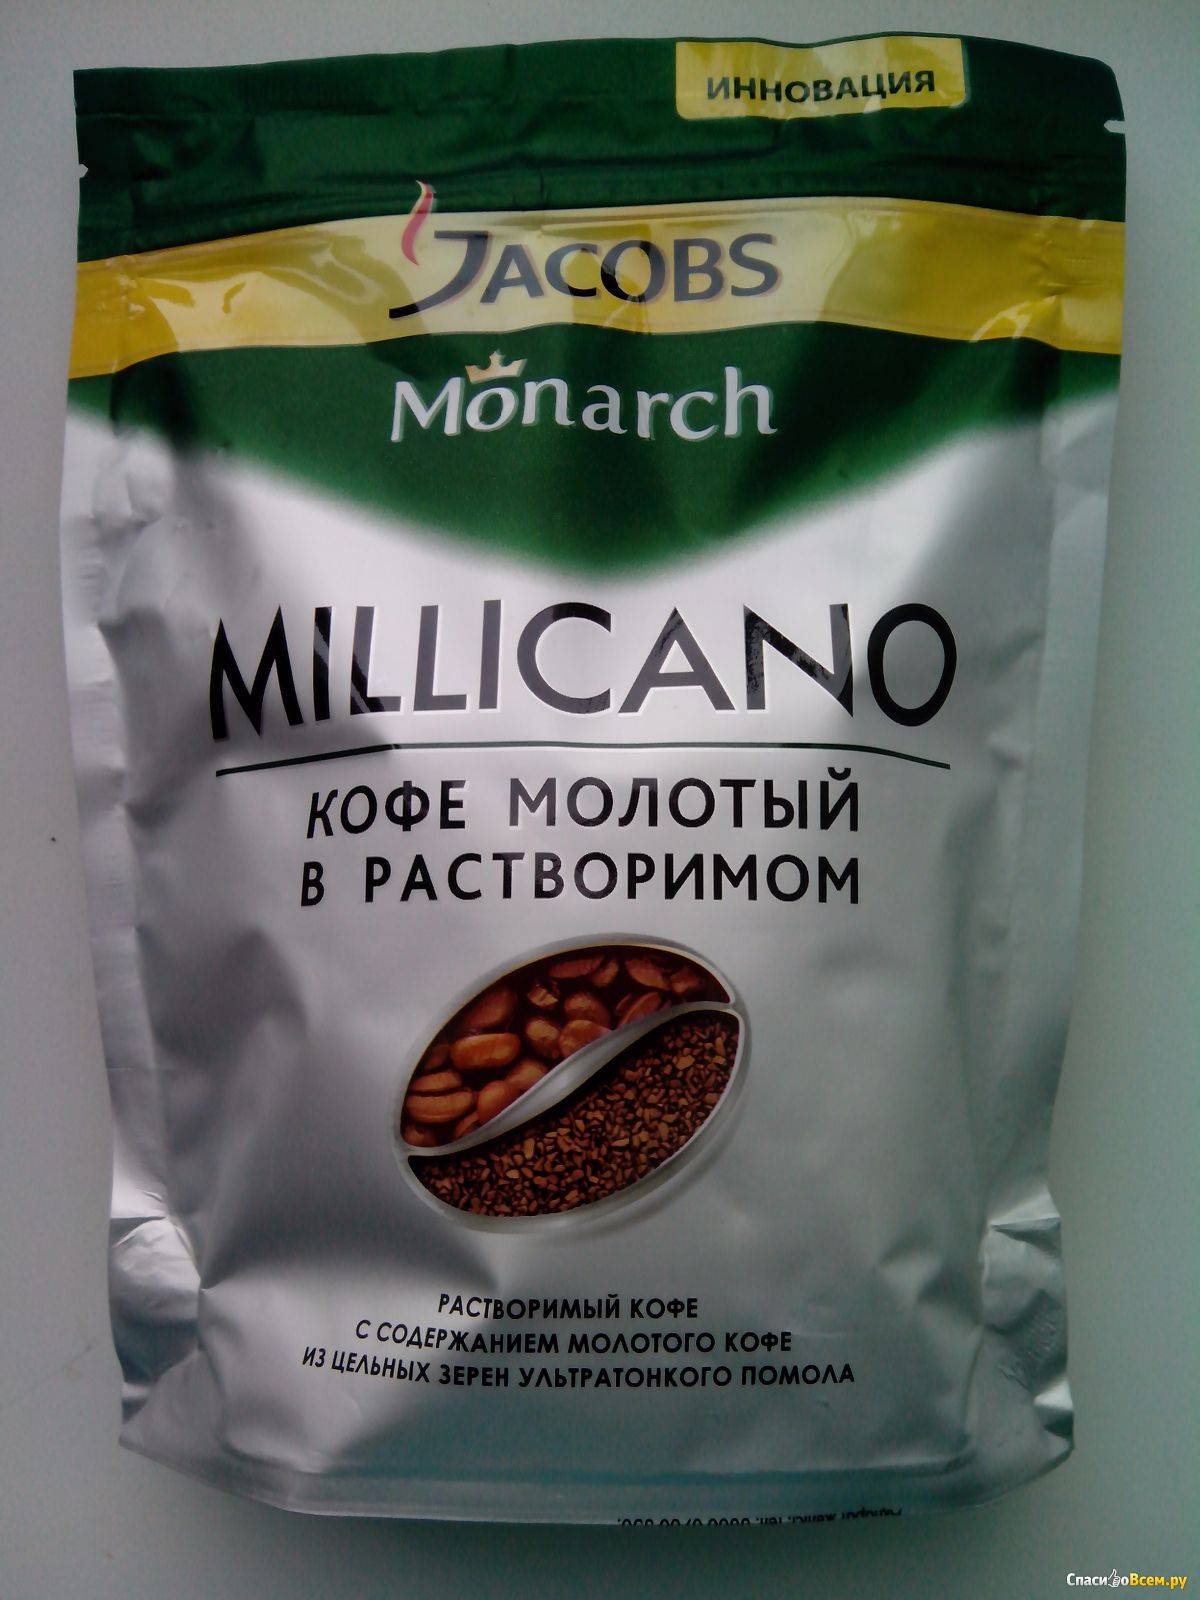 Растворимый или молотый кофе лучше. Марки кофе Якобс Миликано. Монарх кофе молотый в растворимом. Кофе Якобс Миликано в зернах. Кофе растворимый кофе молотый Якобс.